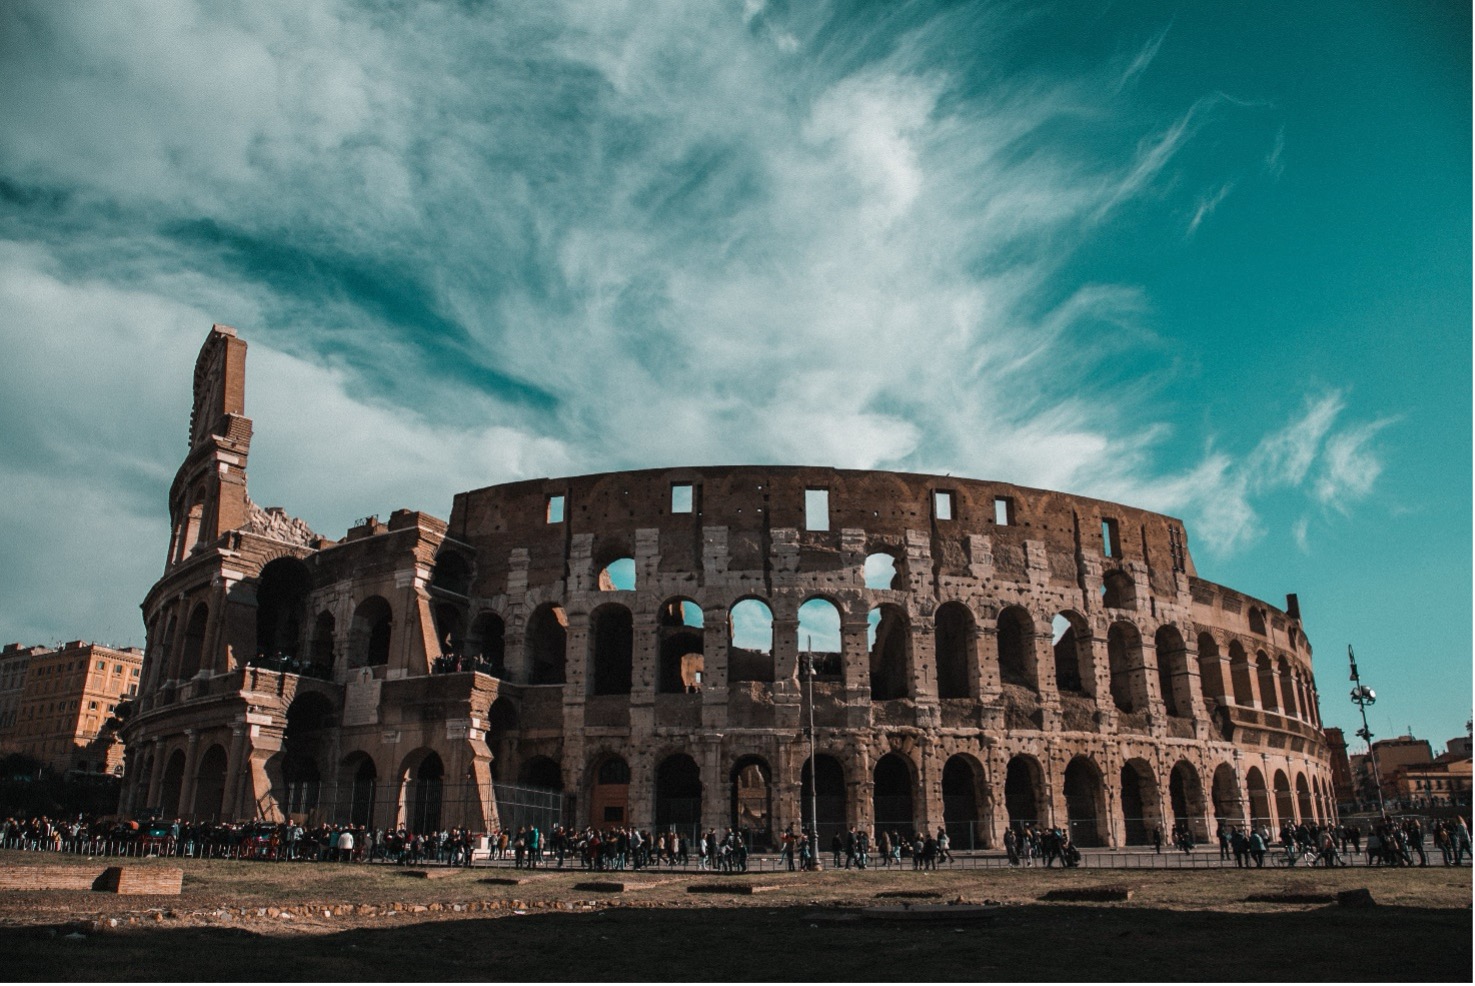 Siti Unesco: Il Colosseo